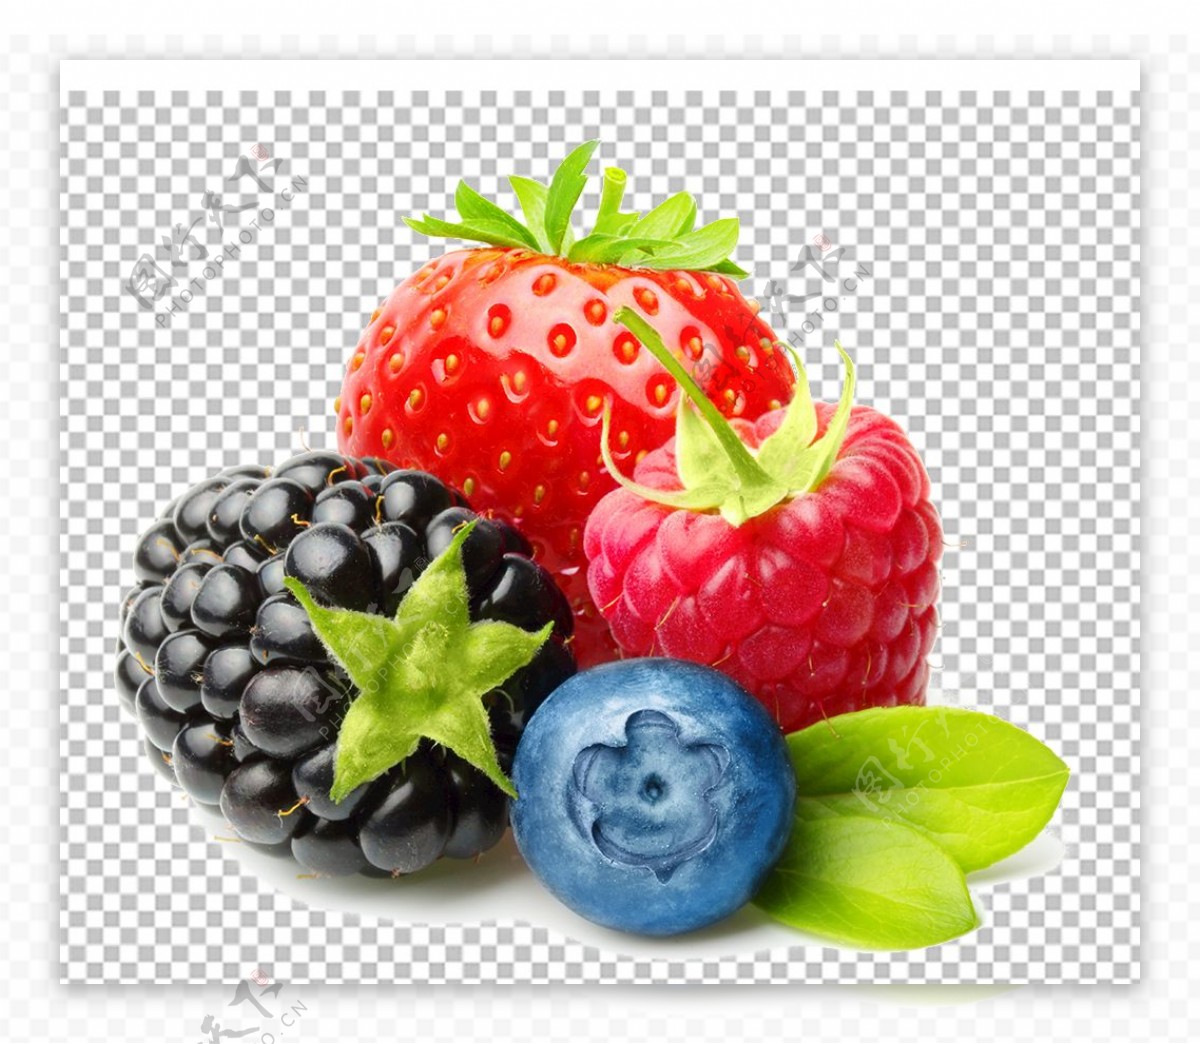 草莓蓝莓特写图片